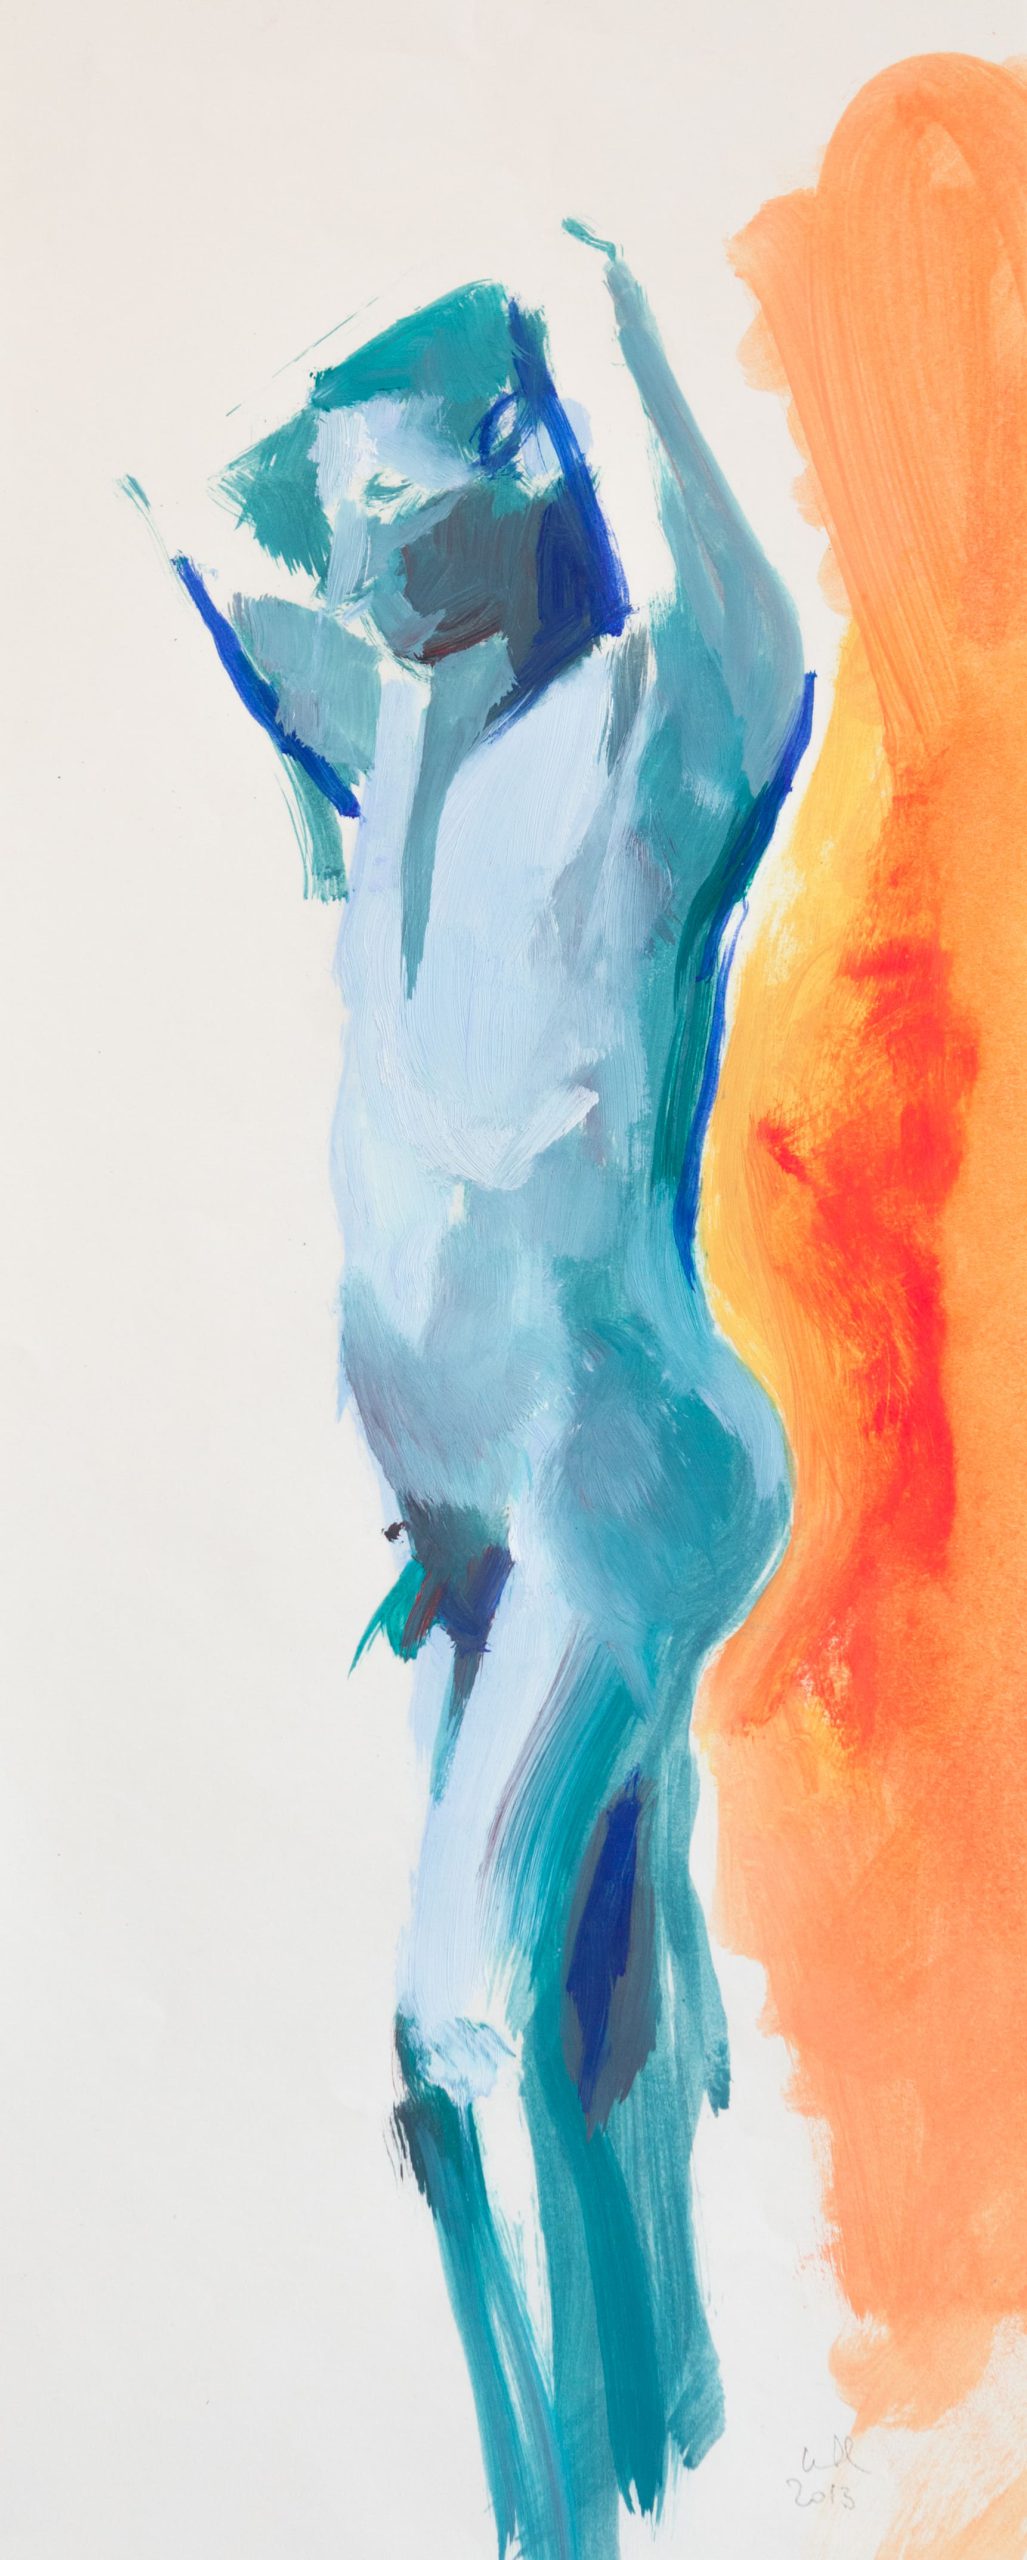 Homme bleu -15cm x 50cm – Huile sur papier